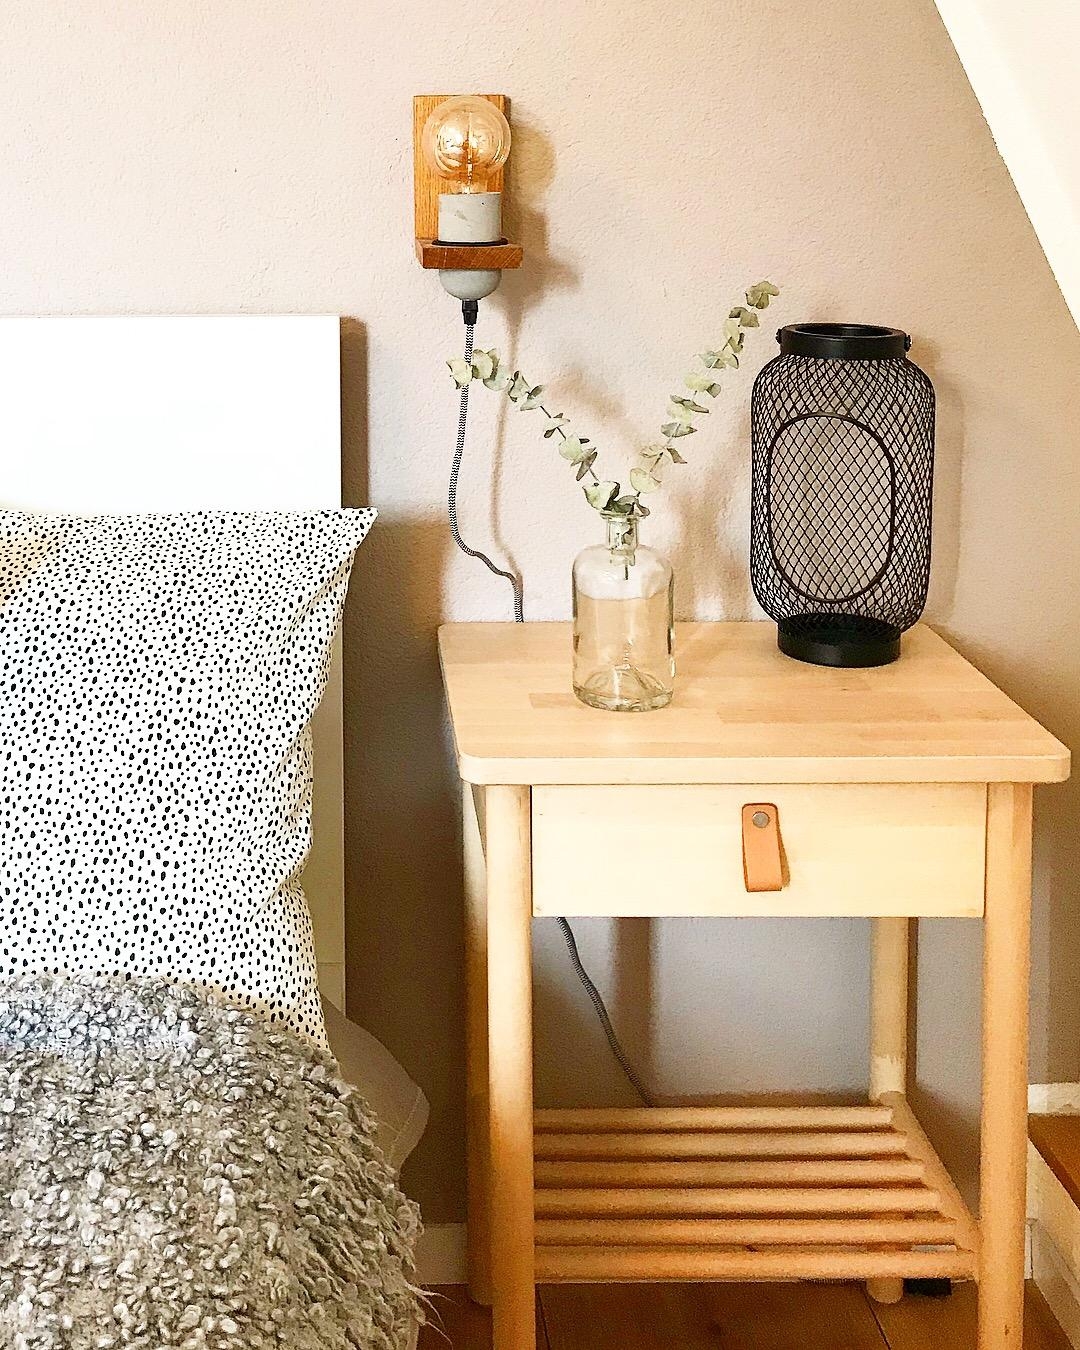 Ein Ausschnitt unseres Schlafzimmers 
Produkte von Ikea mit kleinen Details in Szene gesetzt
#ikea #schlafzimmer 